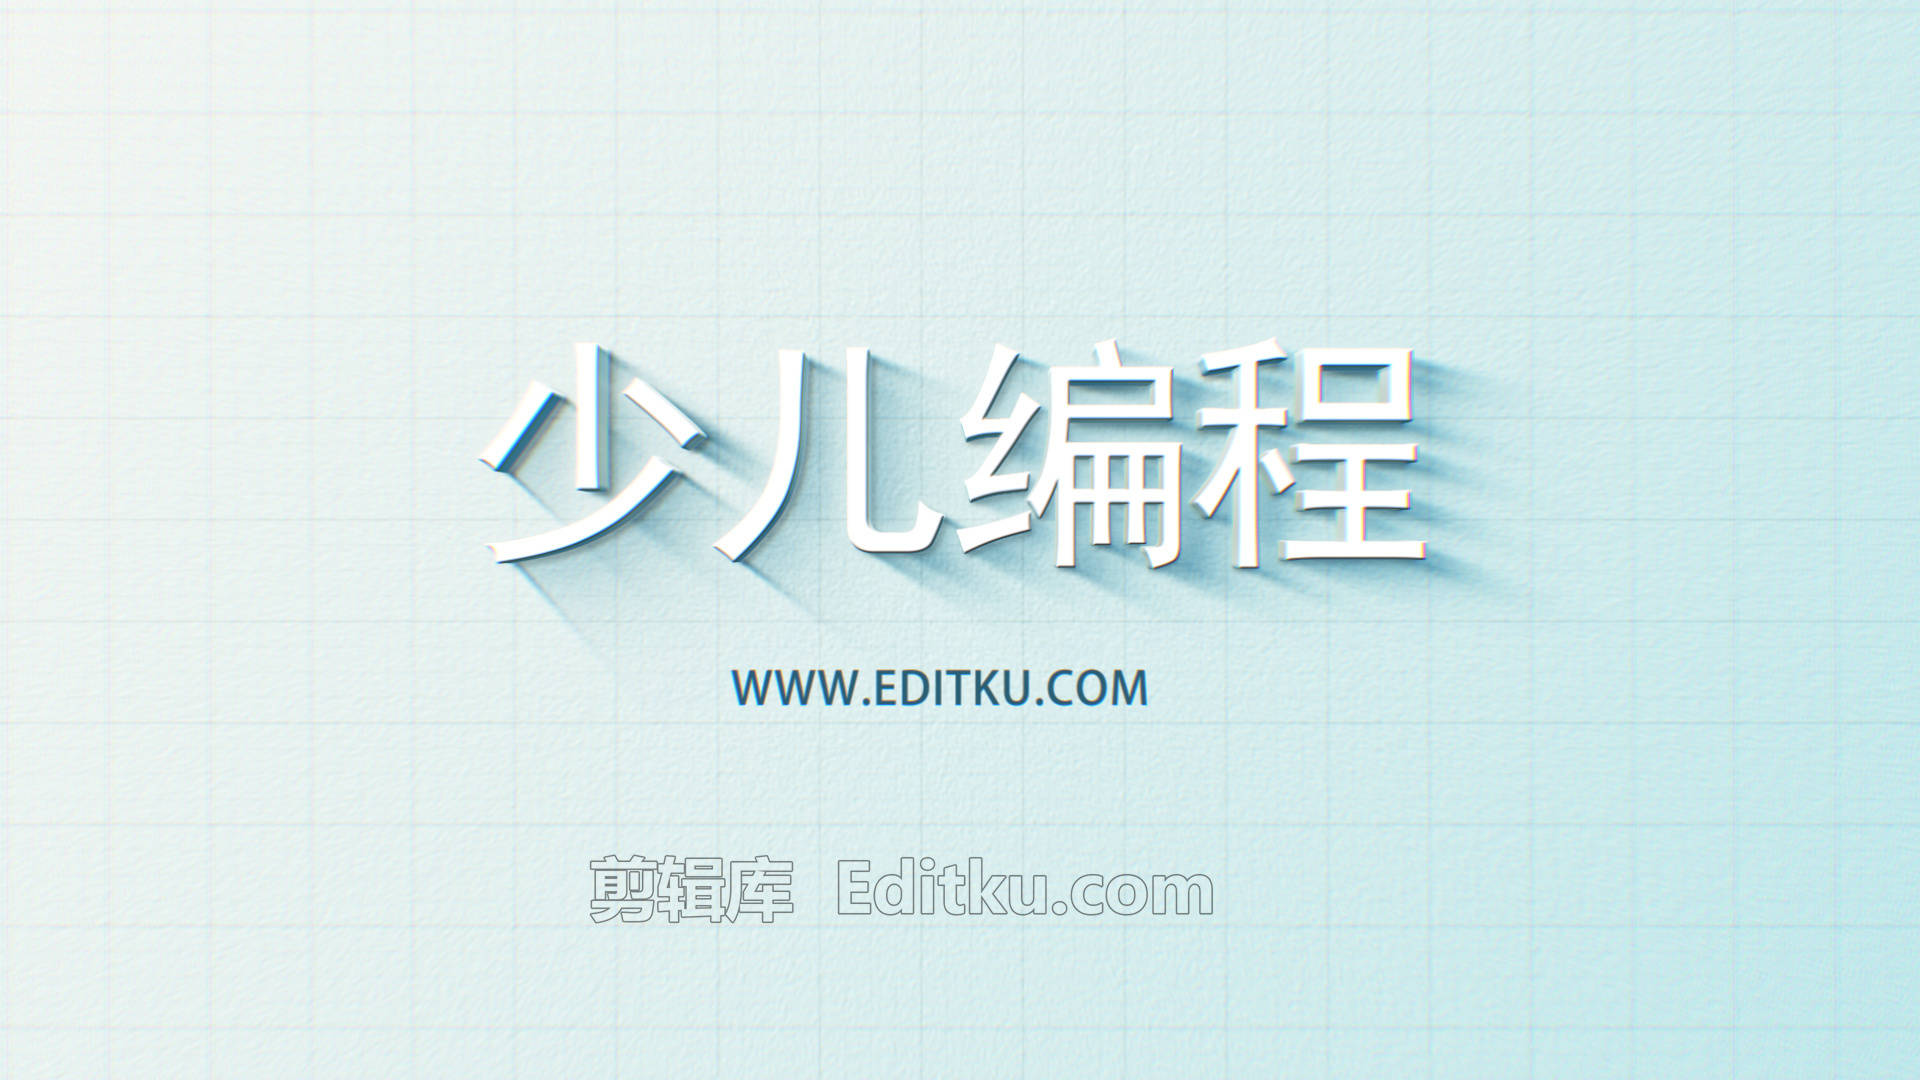 简洁描边少儿图形化编程教育培养LOGO片头中文AE模板_第3张图片_AE模板库